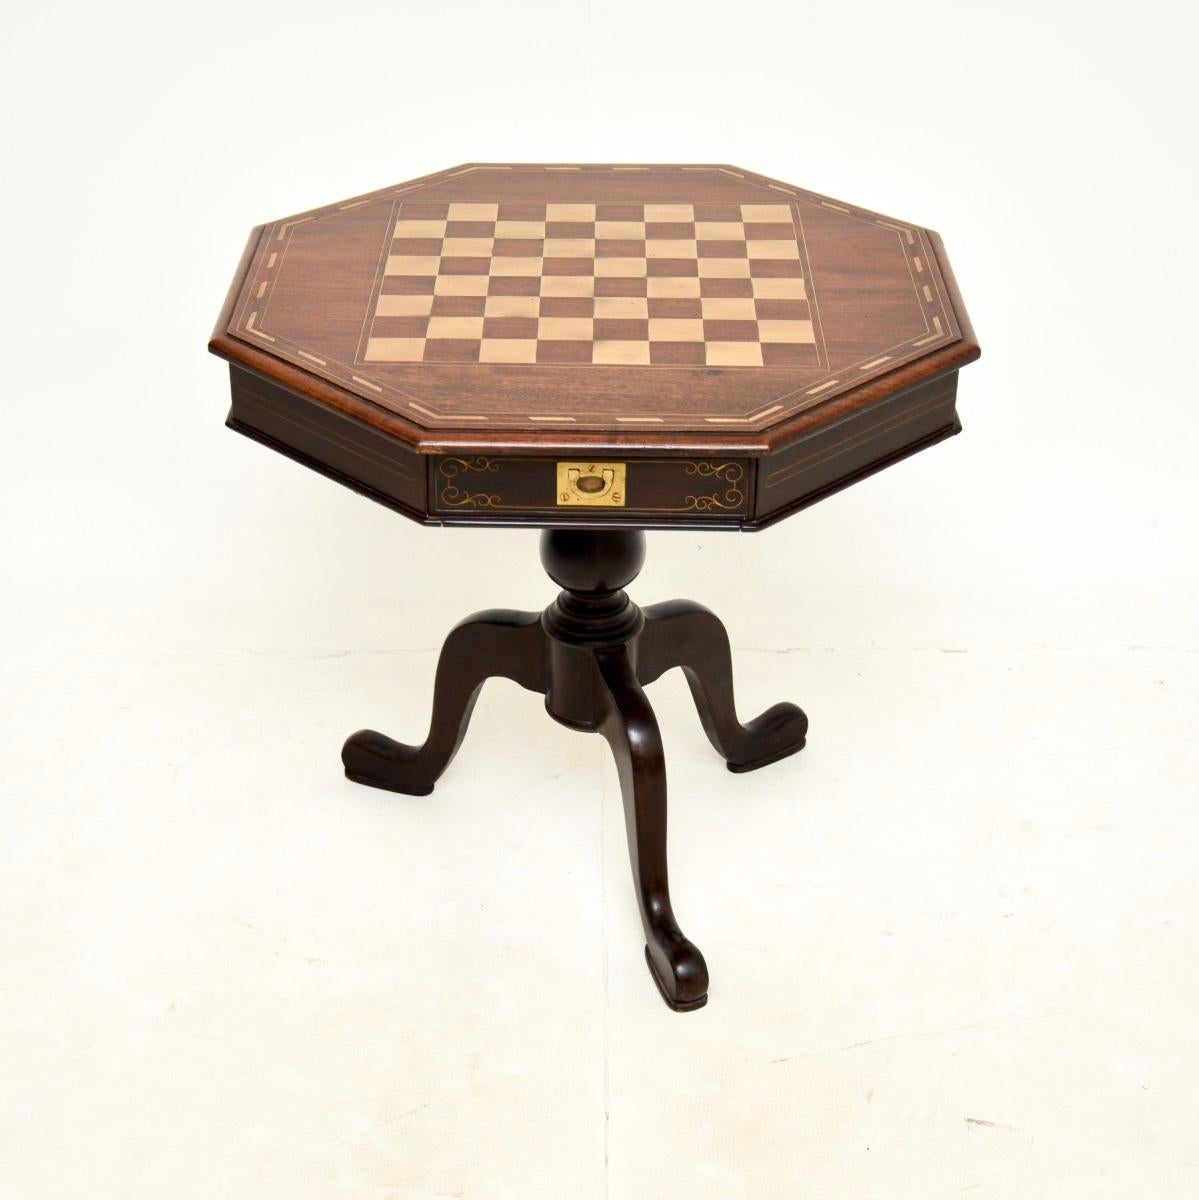 Eine wunderbare antike Intarsien Messing Seite / Schach-Tabelle. Es wurde in England hergestellt und stammt etwa aus den 1950er Jahren.

Es ist von liebevoller Qualität, der Deckel ist wunderschön mit einem Schachbrett aus Messing und eingelegten